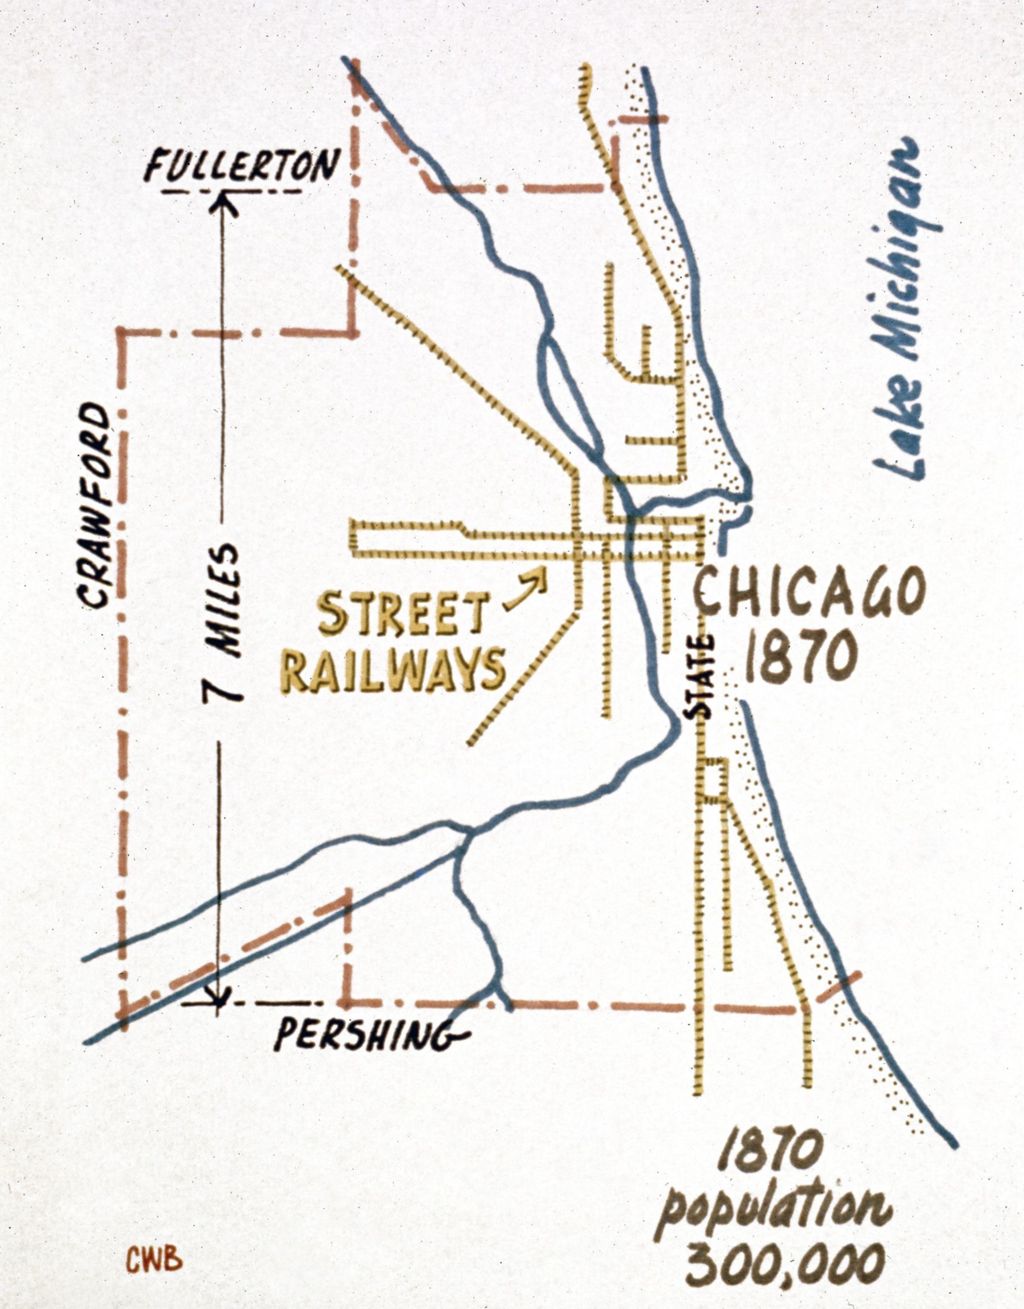 Street railways, Chicago 1870